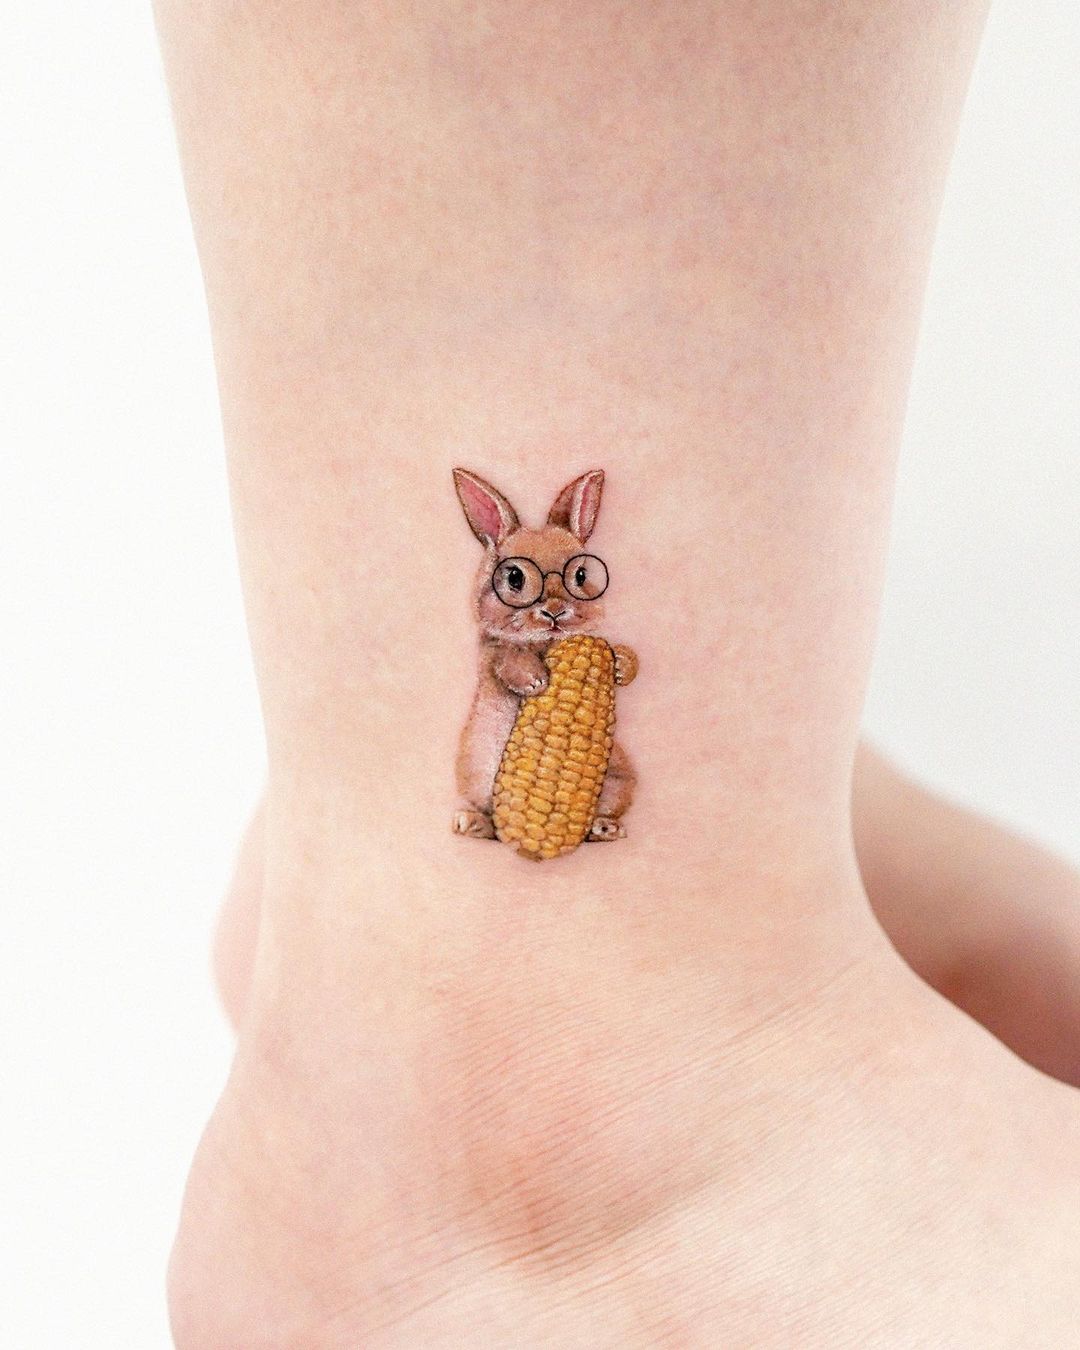 Fun samurai bunny I did today 🐰 @state48tattoo #colortattoo#color# bunnytattoo#bunny#tattoo#tattoos#tattz#tatts#tattooshop#state48ta... |  Instagram